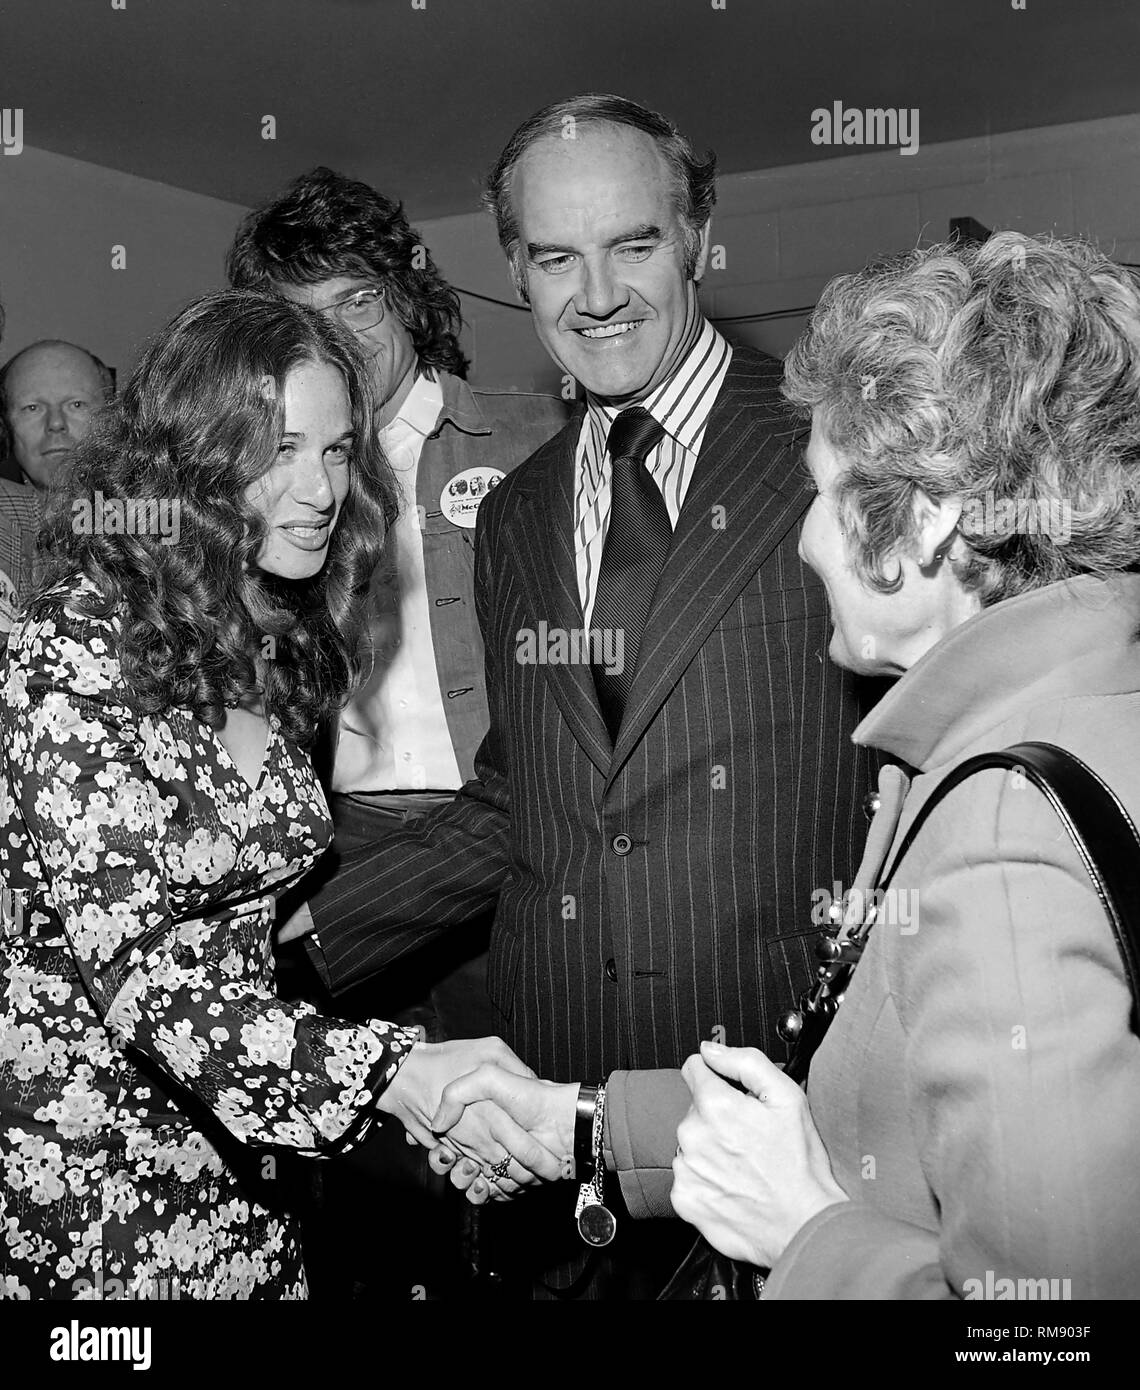 Sängerin Carole King grüßt Eleanor McGovern, Gattin des Präsidentschaftskandidaten George McGovern, bevor ein Benefizkonzert im April 15, 1972 Auf dem Forum in Los Angeles mit James Taylor Carole King, Barbra Streisand und Quincy Jones. Stockfoto